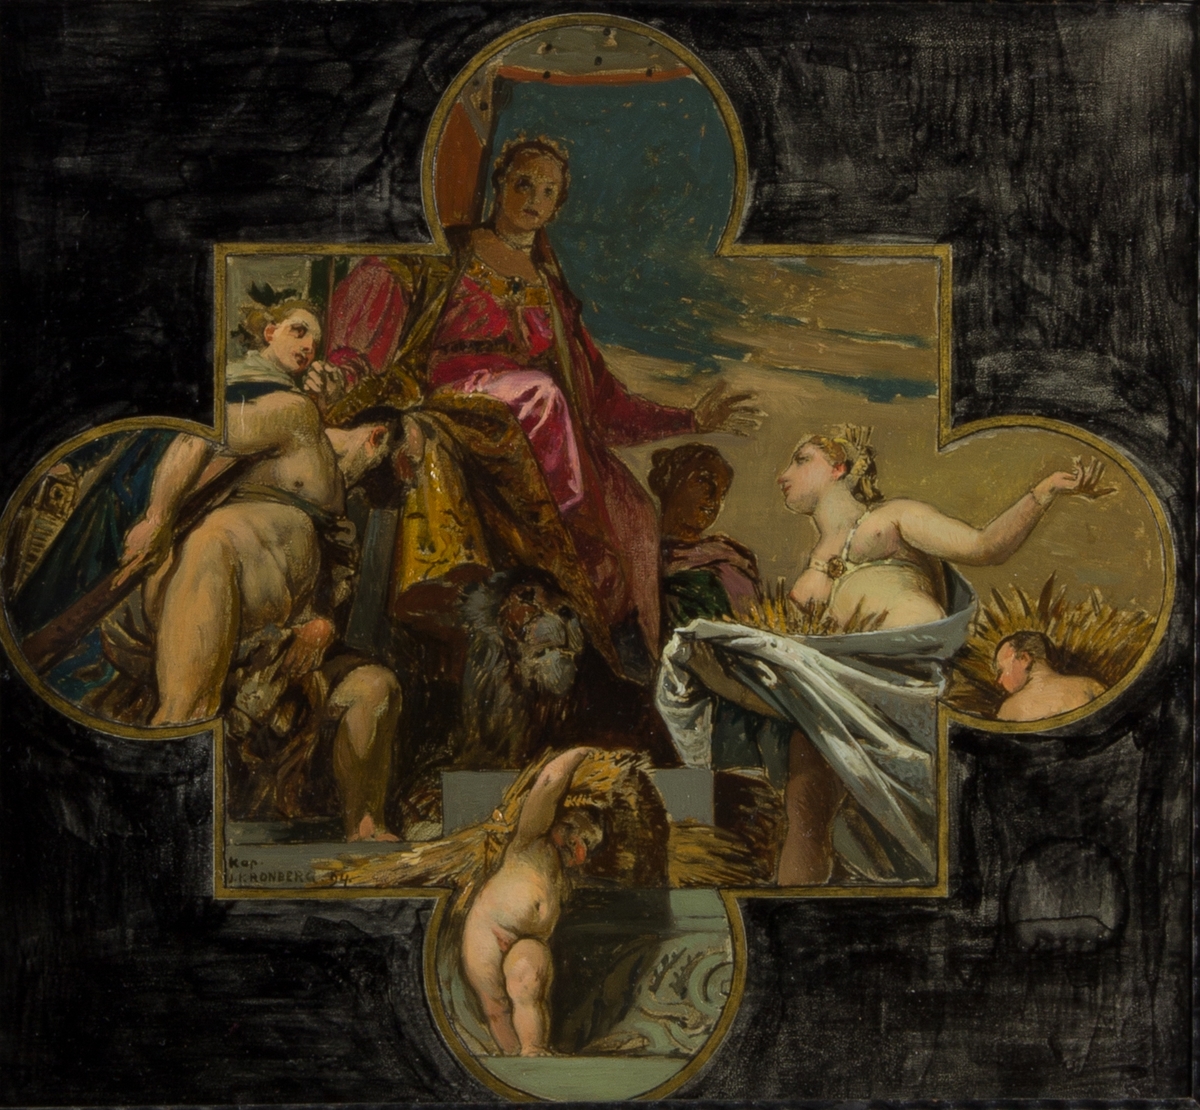 Allergorisk framställning av Venezia sittande på en tron med ett lejon vid fötterna. Hyllad av till vänster Hercules, naken, och till höger gudinnan Ceres.